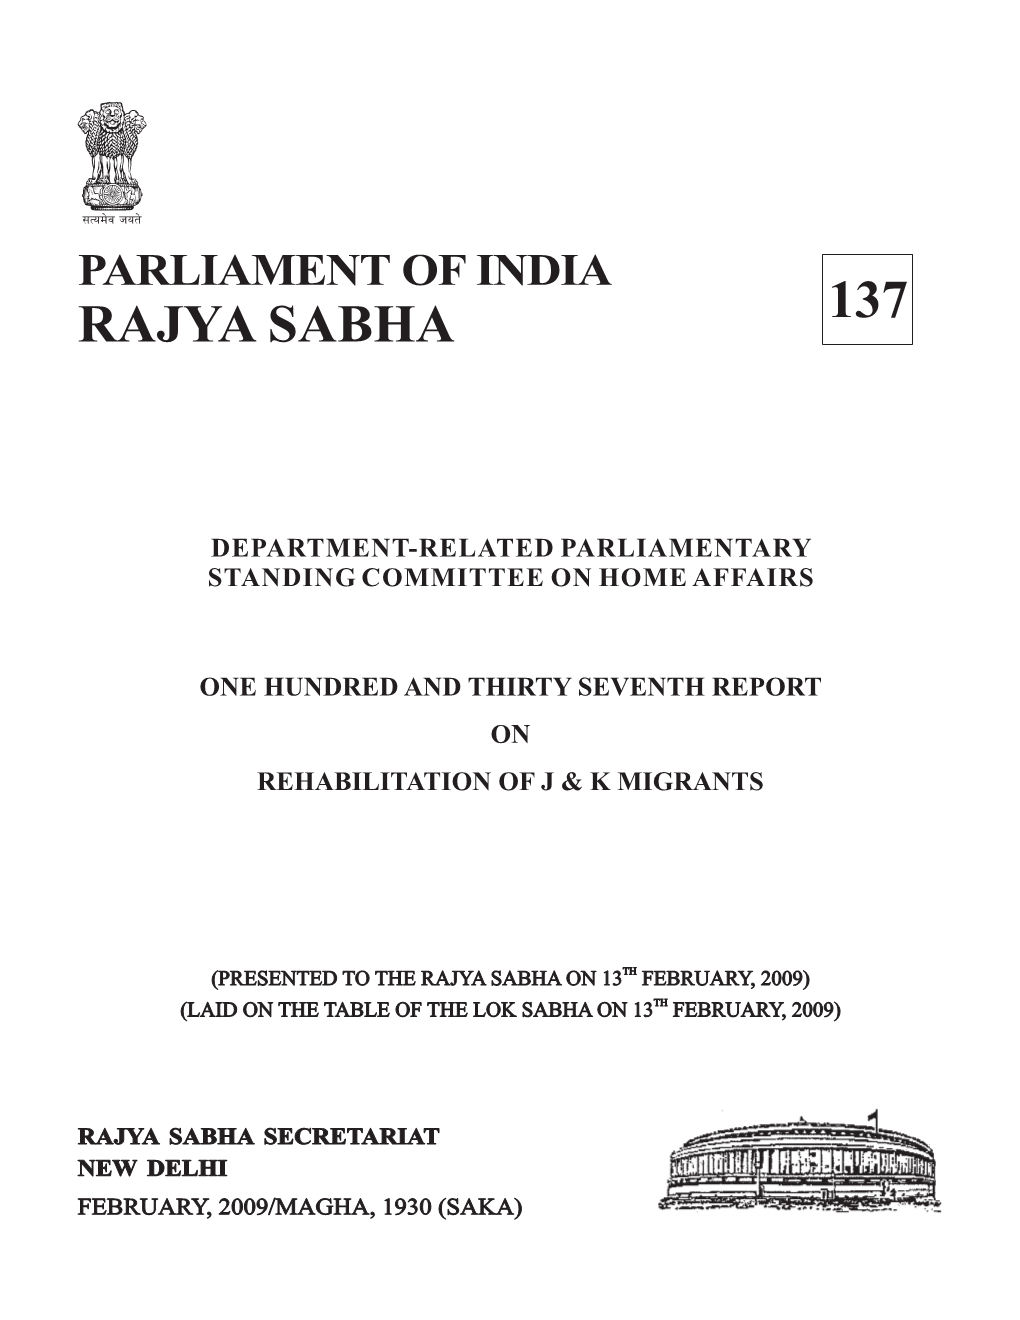 Rajya Sabha 137